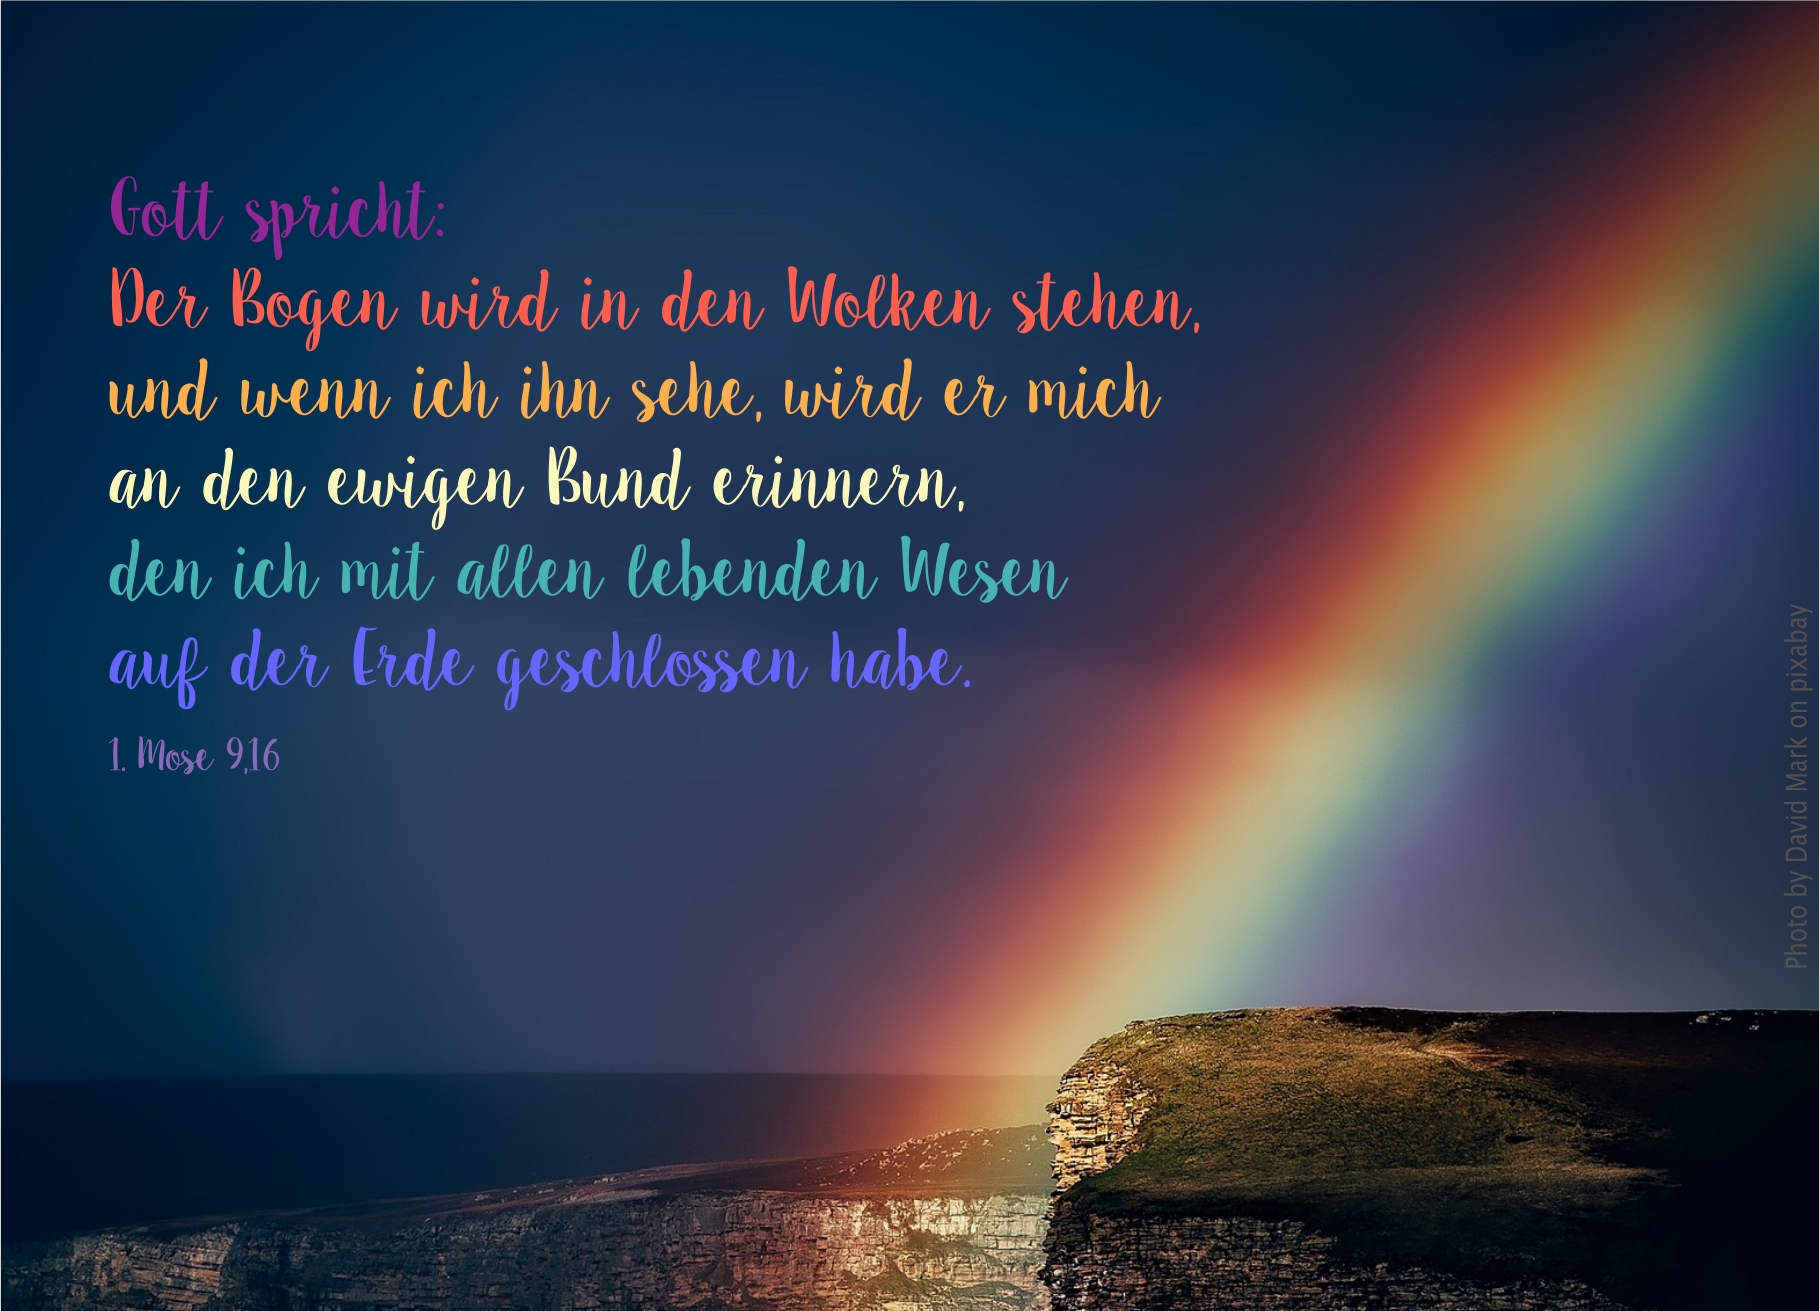 alt="regenbogen_an_steilkueste_erwartet_bibelhoerbuch_gottes_friedensbund"